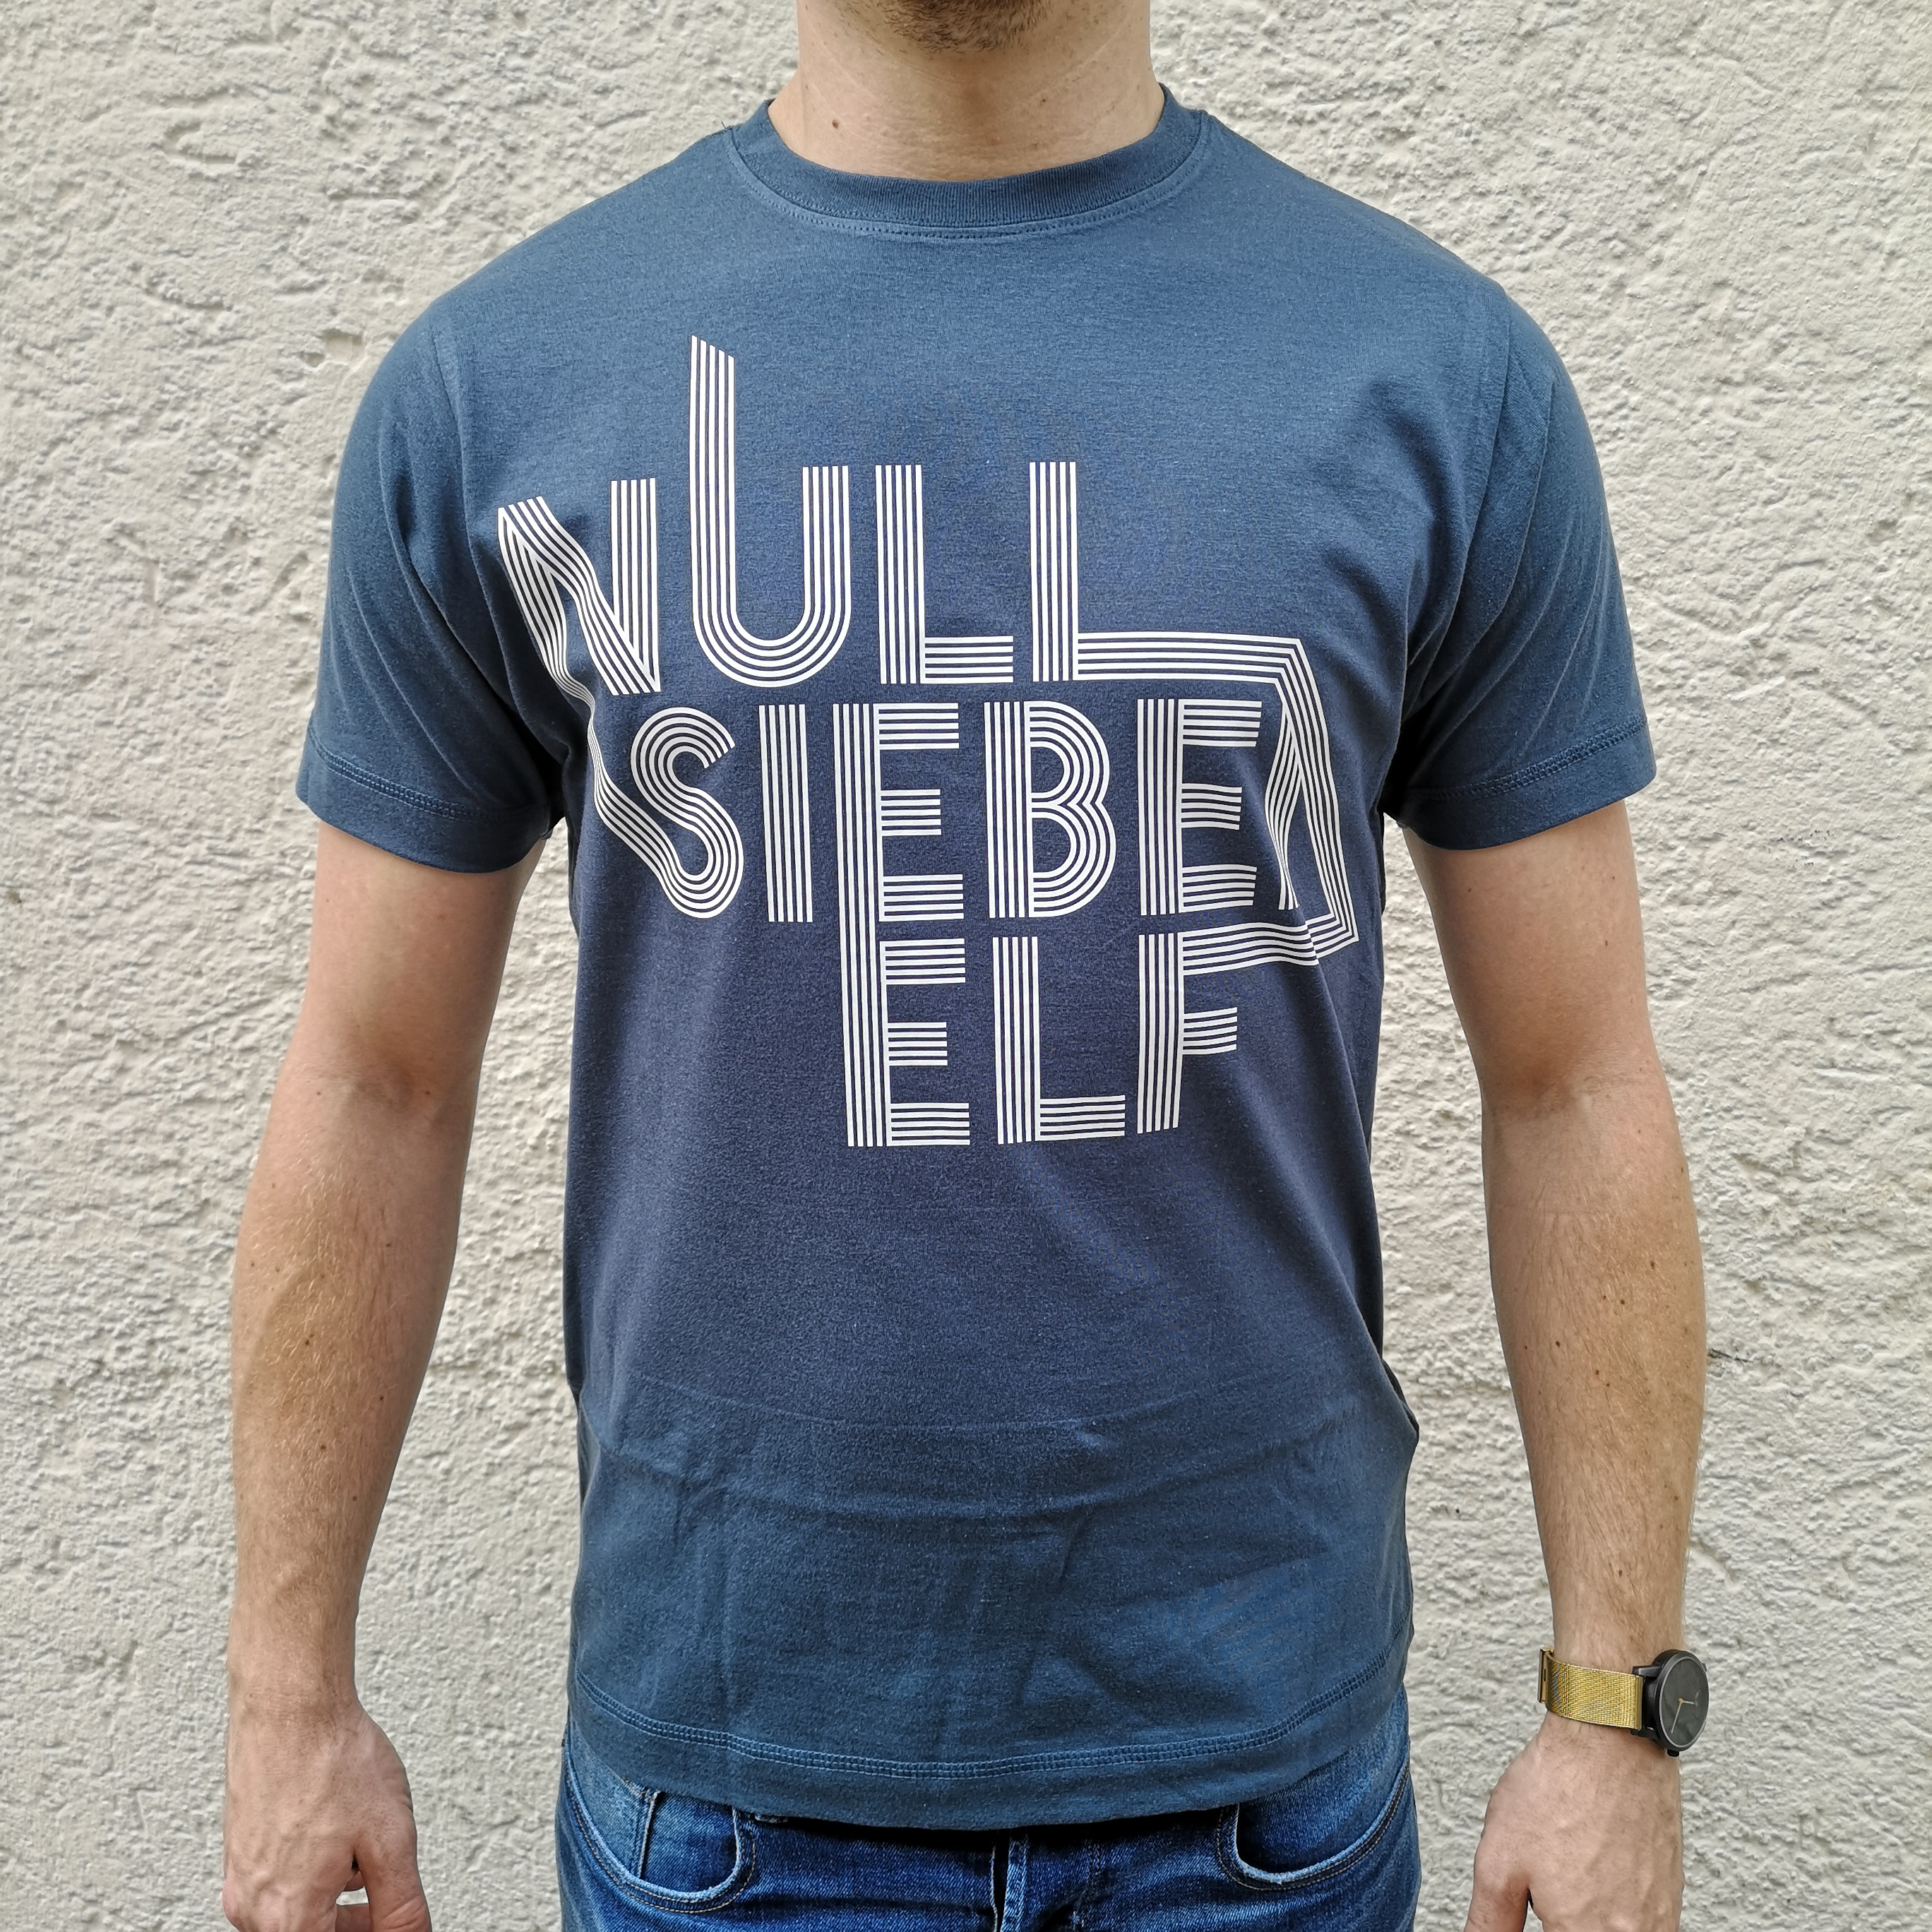 Stuttgart T-Shirt Null Sieben Elf